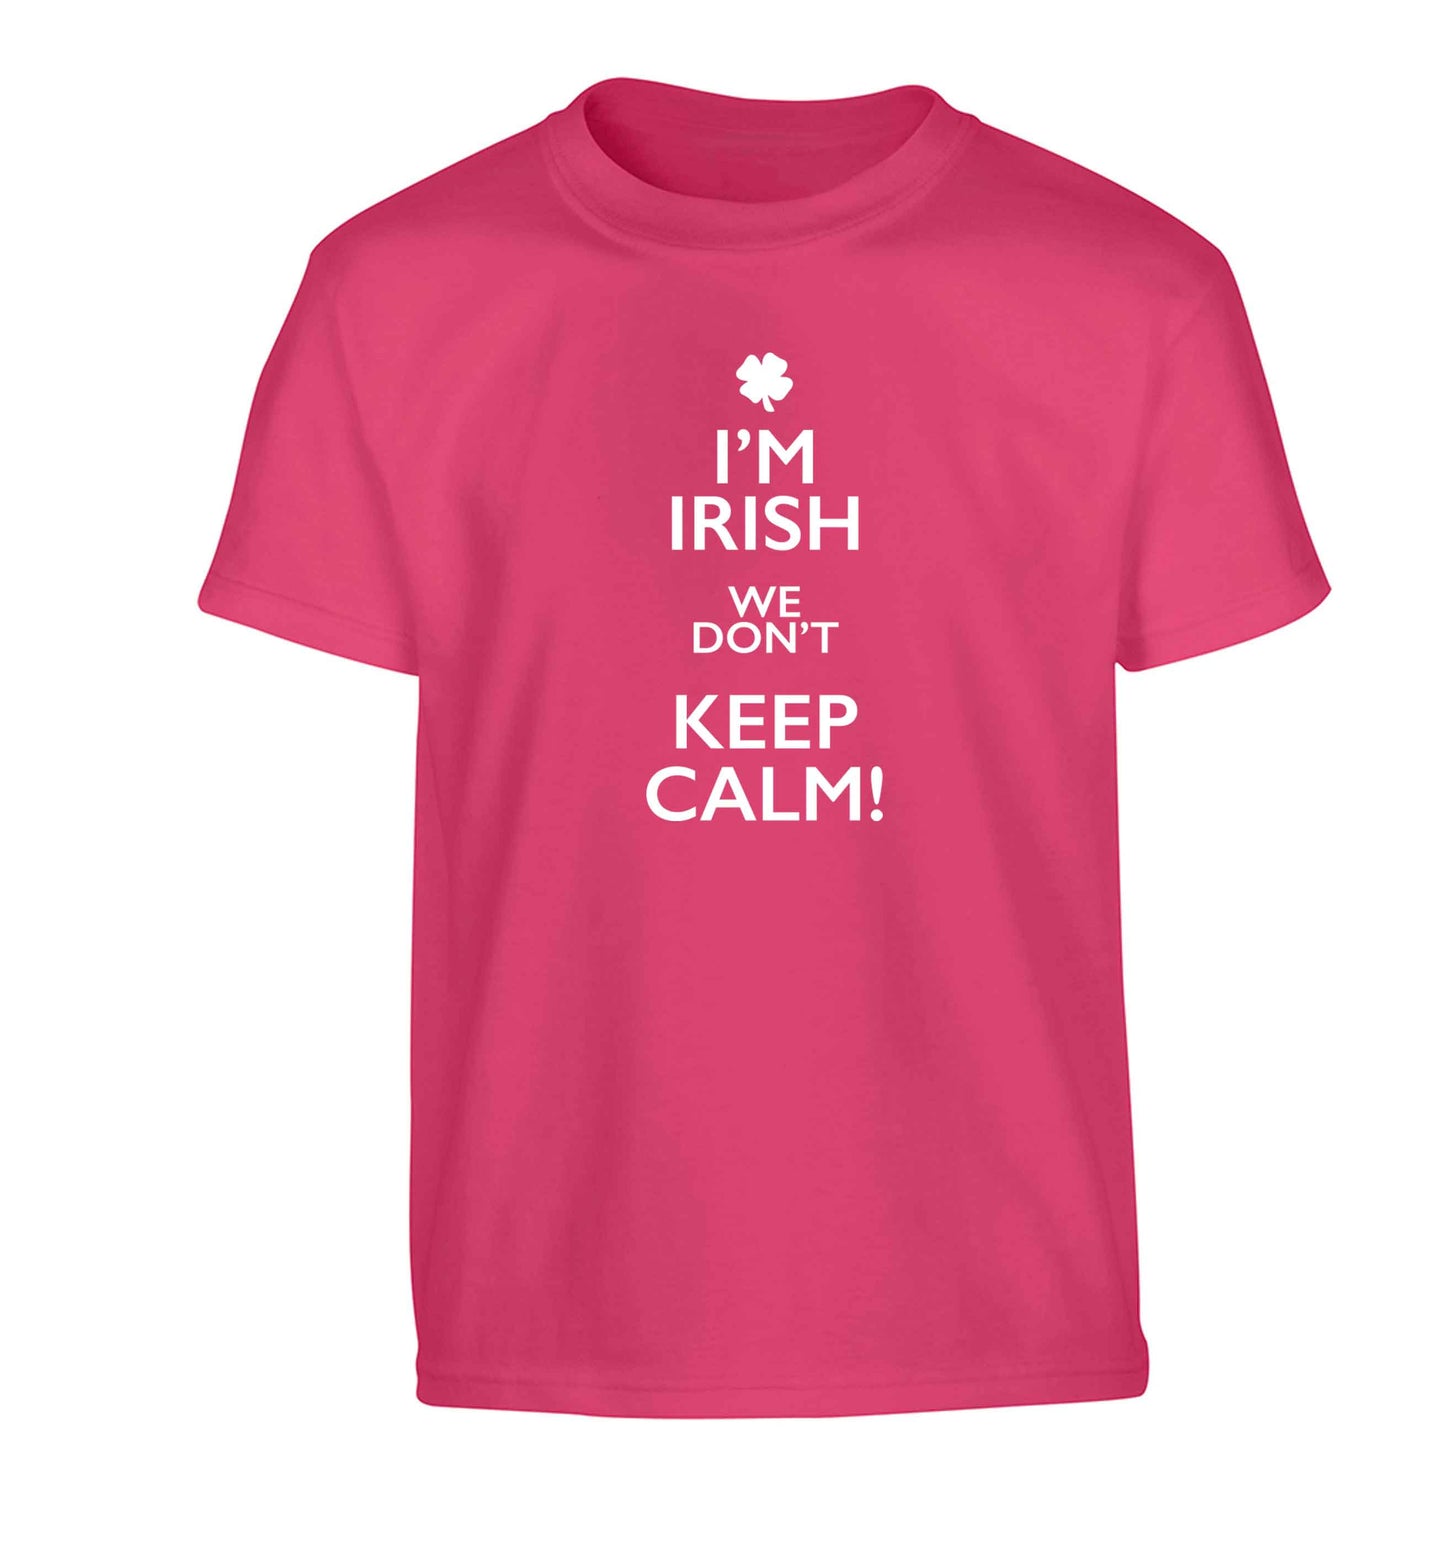 I'm Irish we don't keep calm Children's pink Tshirt 12-13 Years